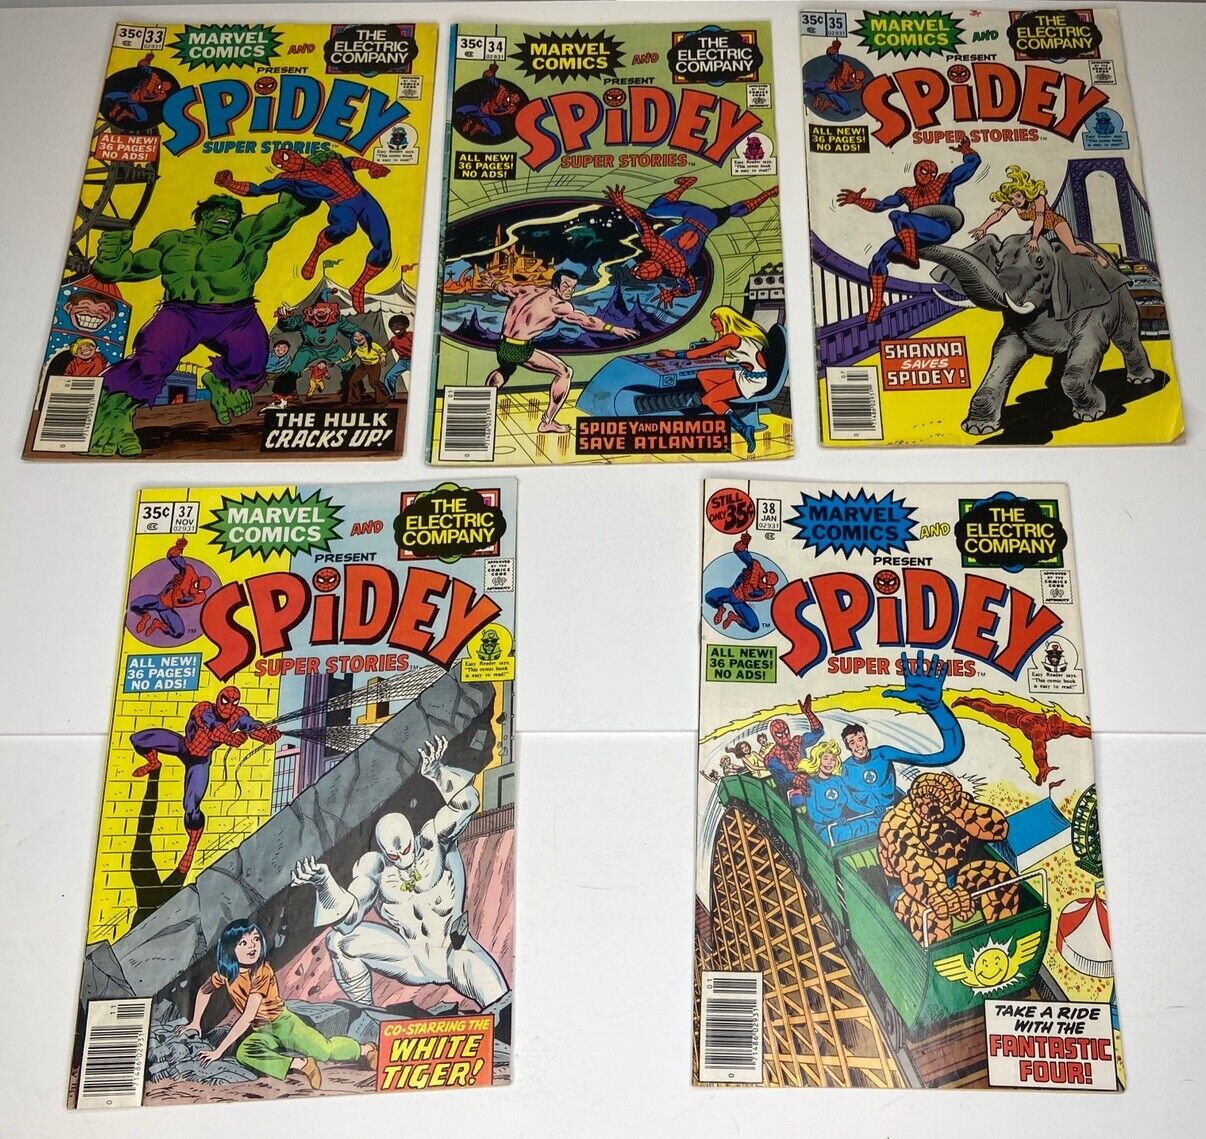 Spidey Super Stories (1978) Issue 5 Pack #33, #34, #35, #37, #38